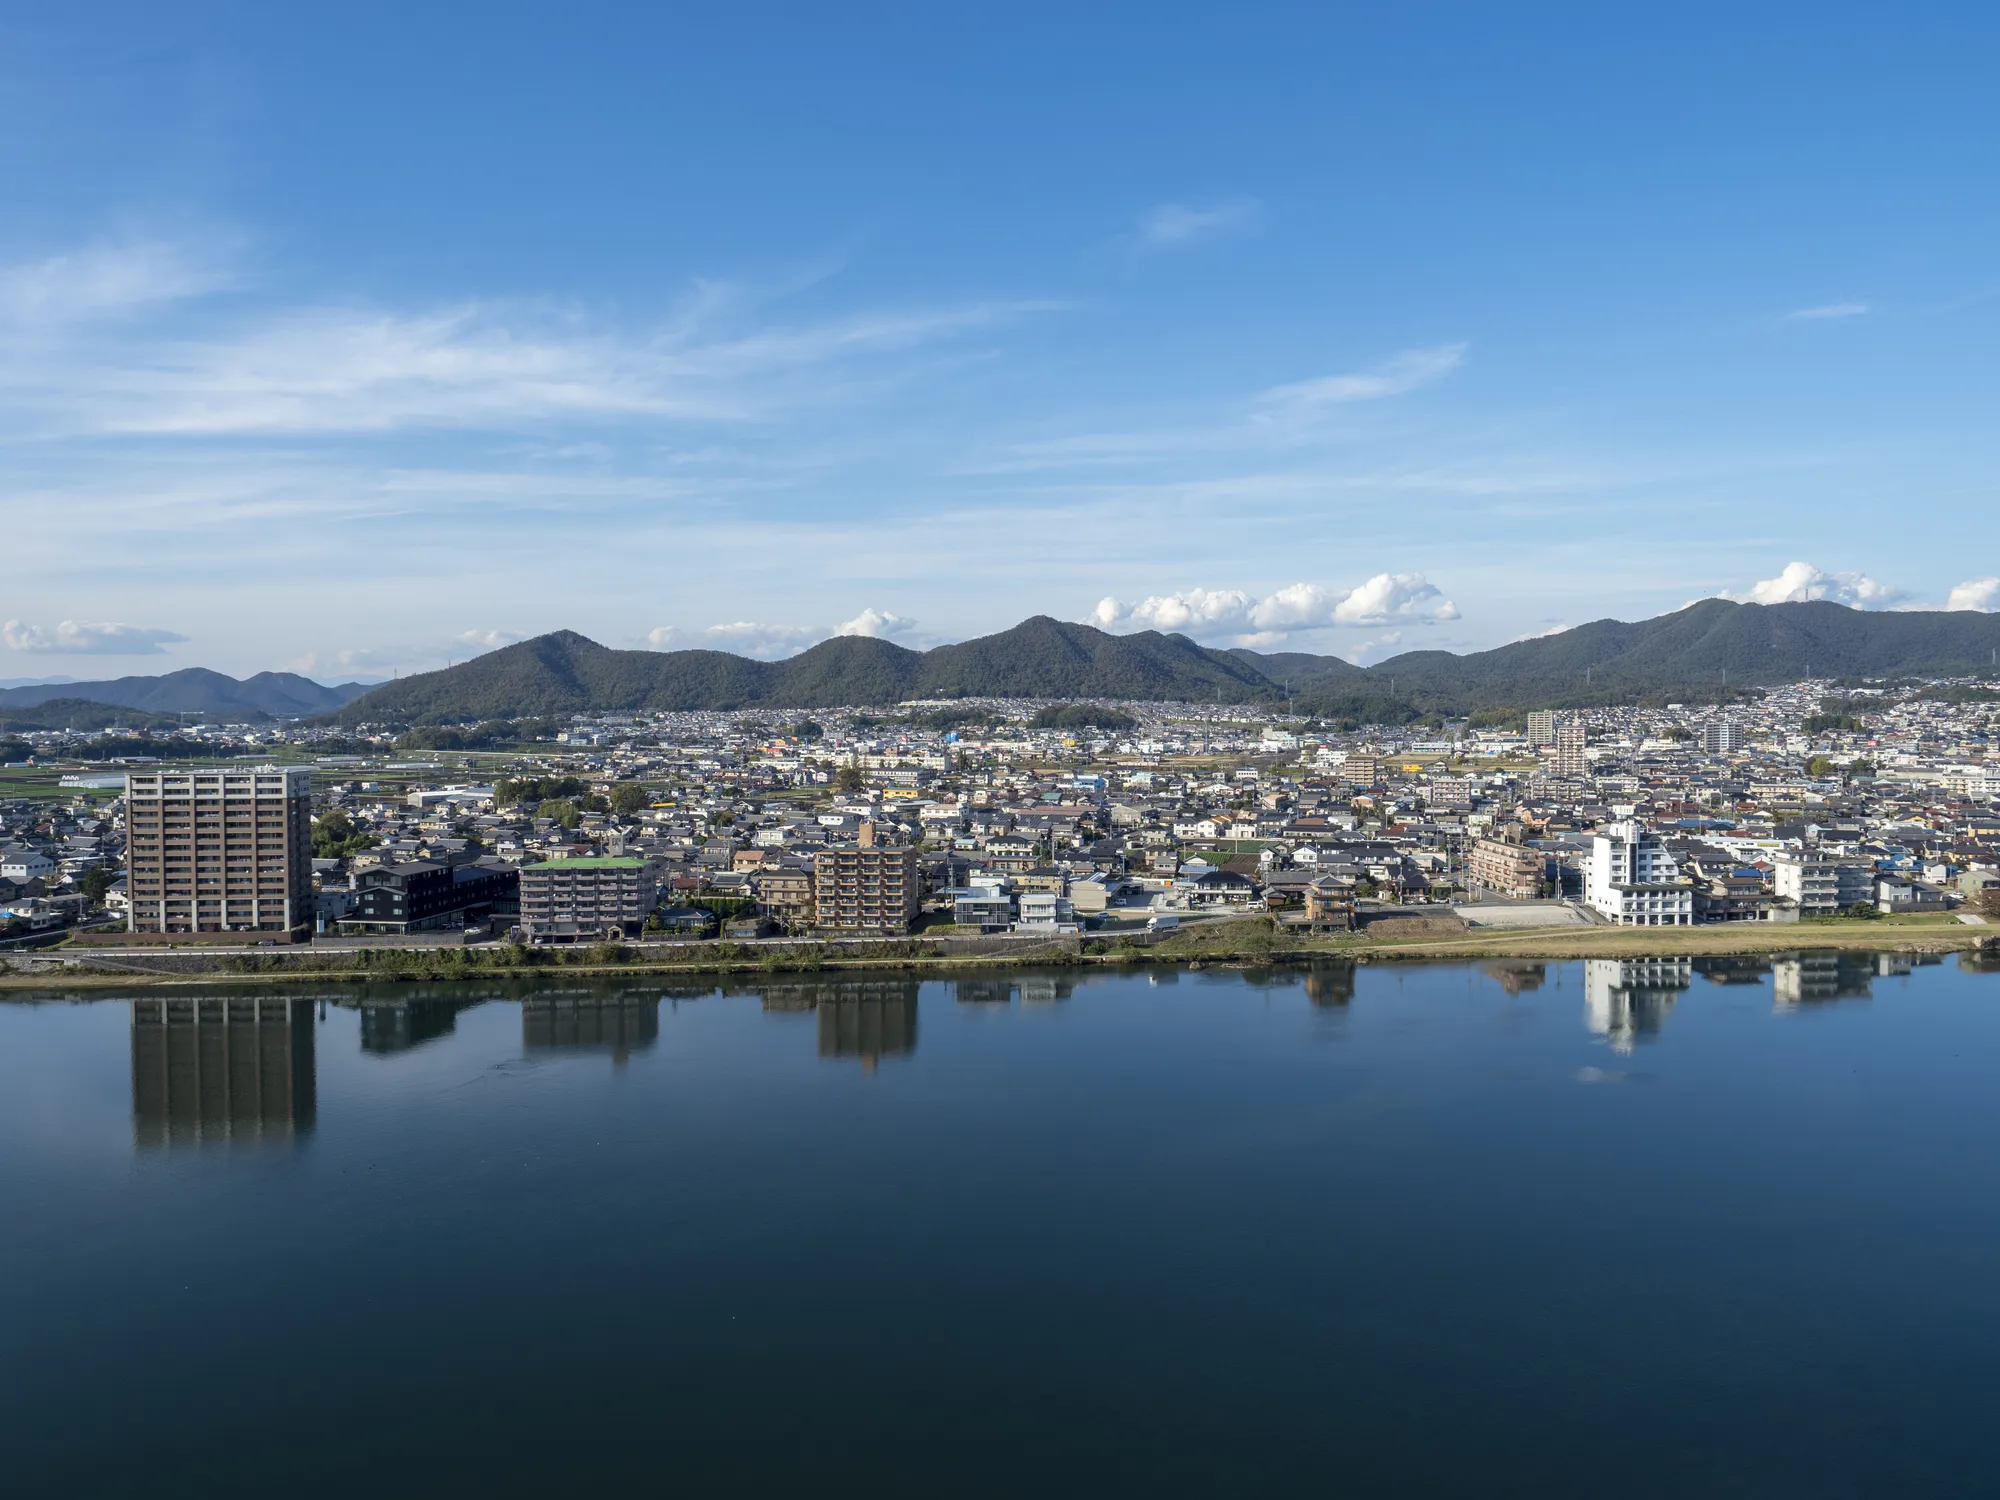 愛知県犬山市でおすすめの観光スポット15選